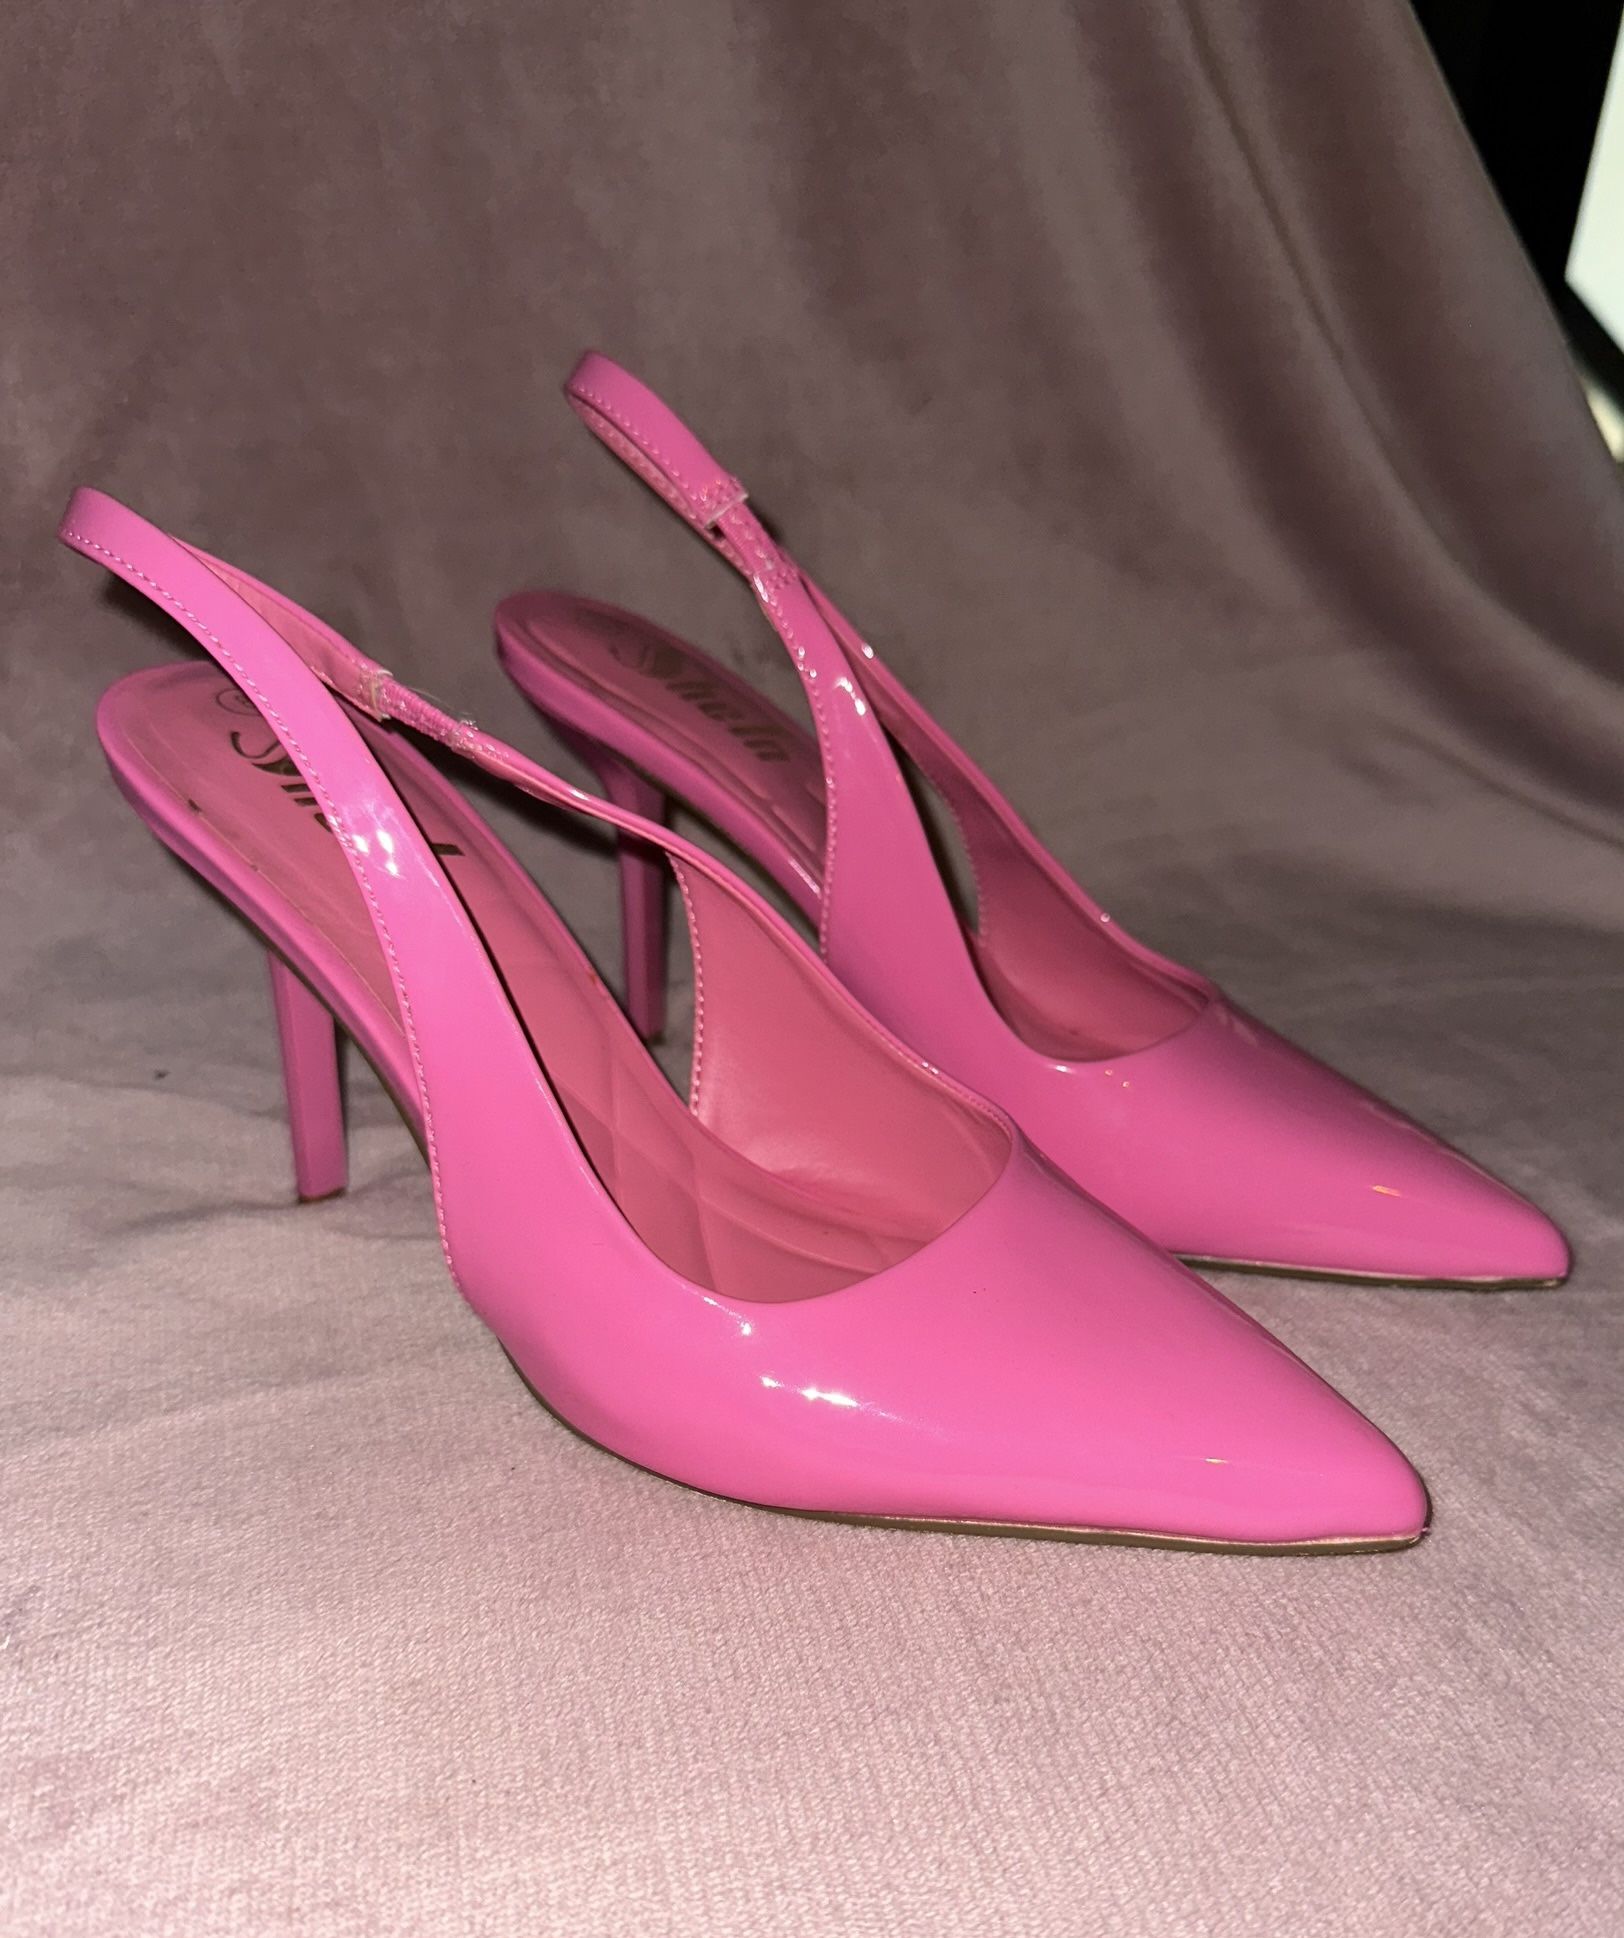 Barbie Pink Heels Size 8W